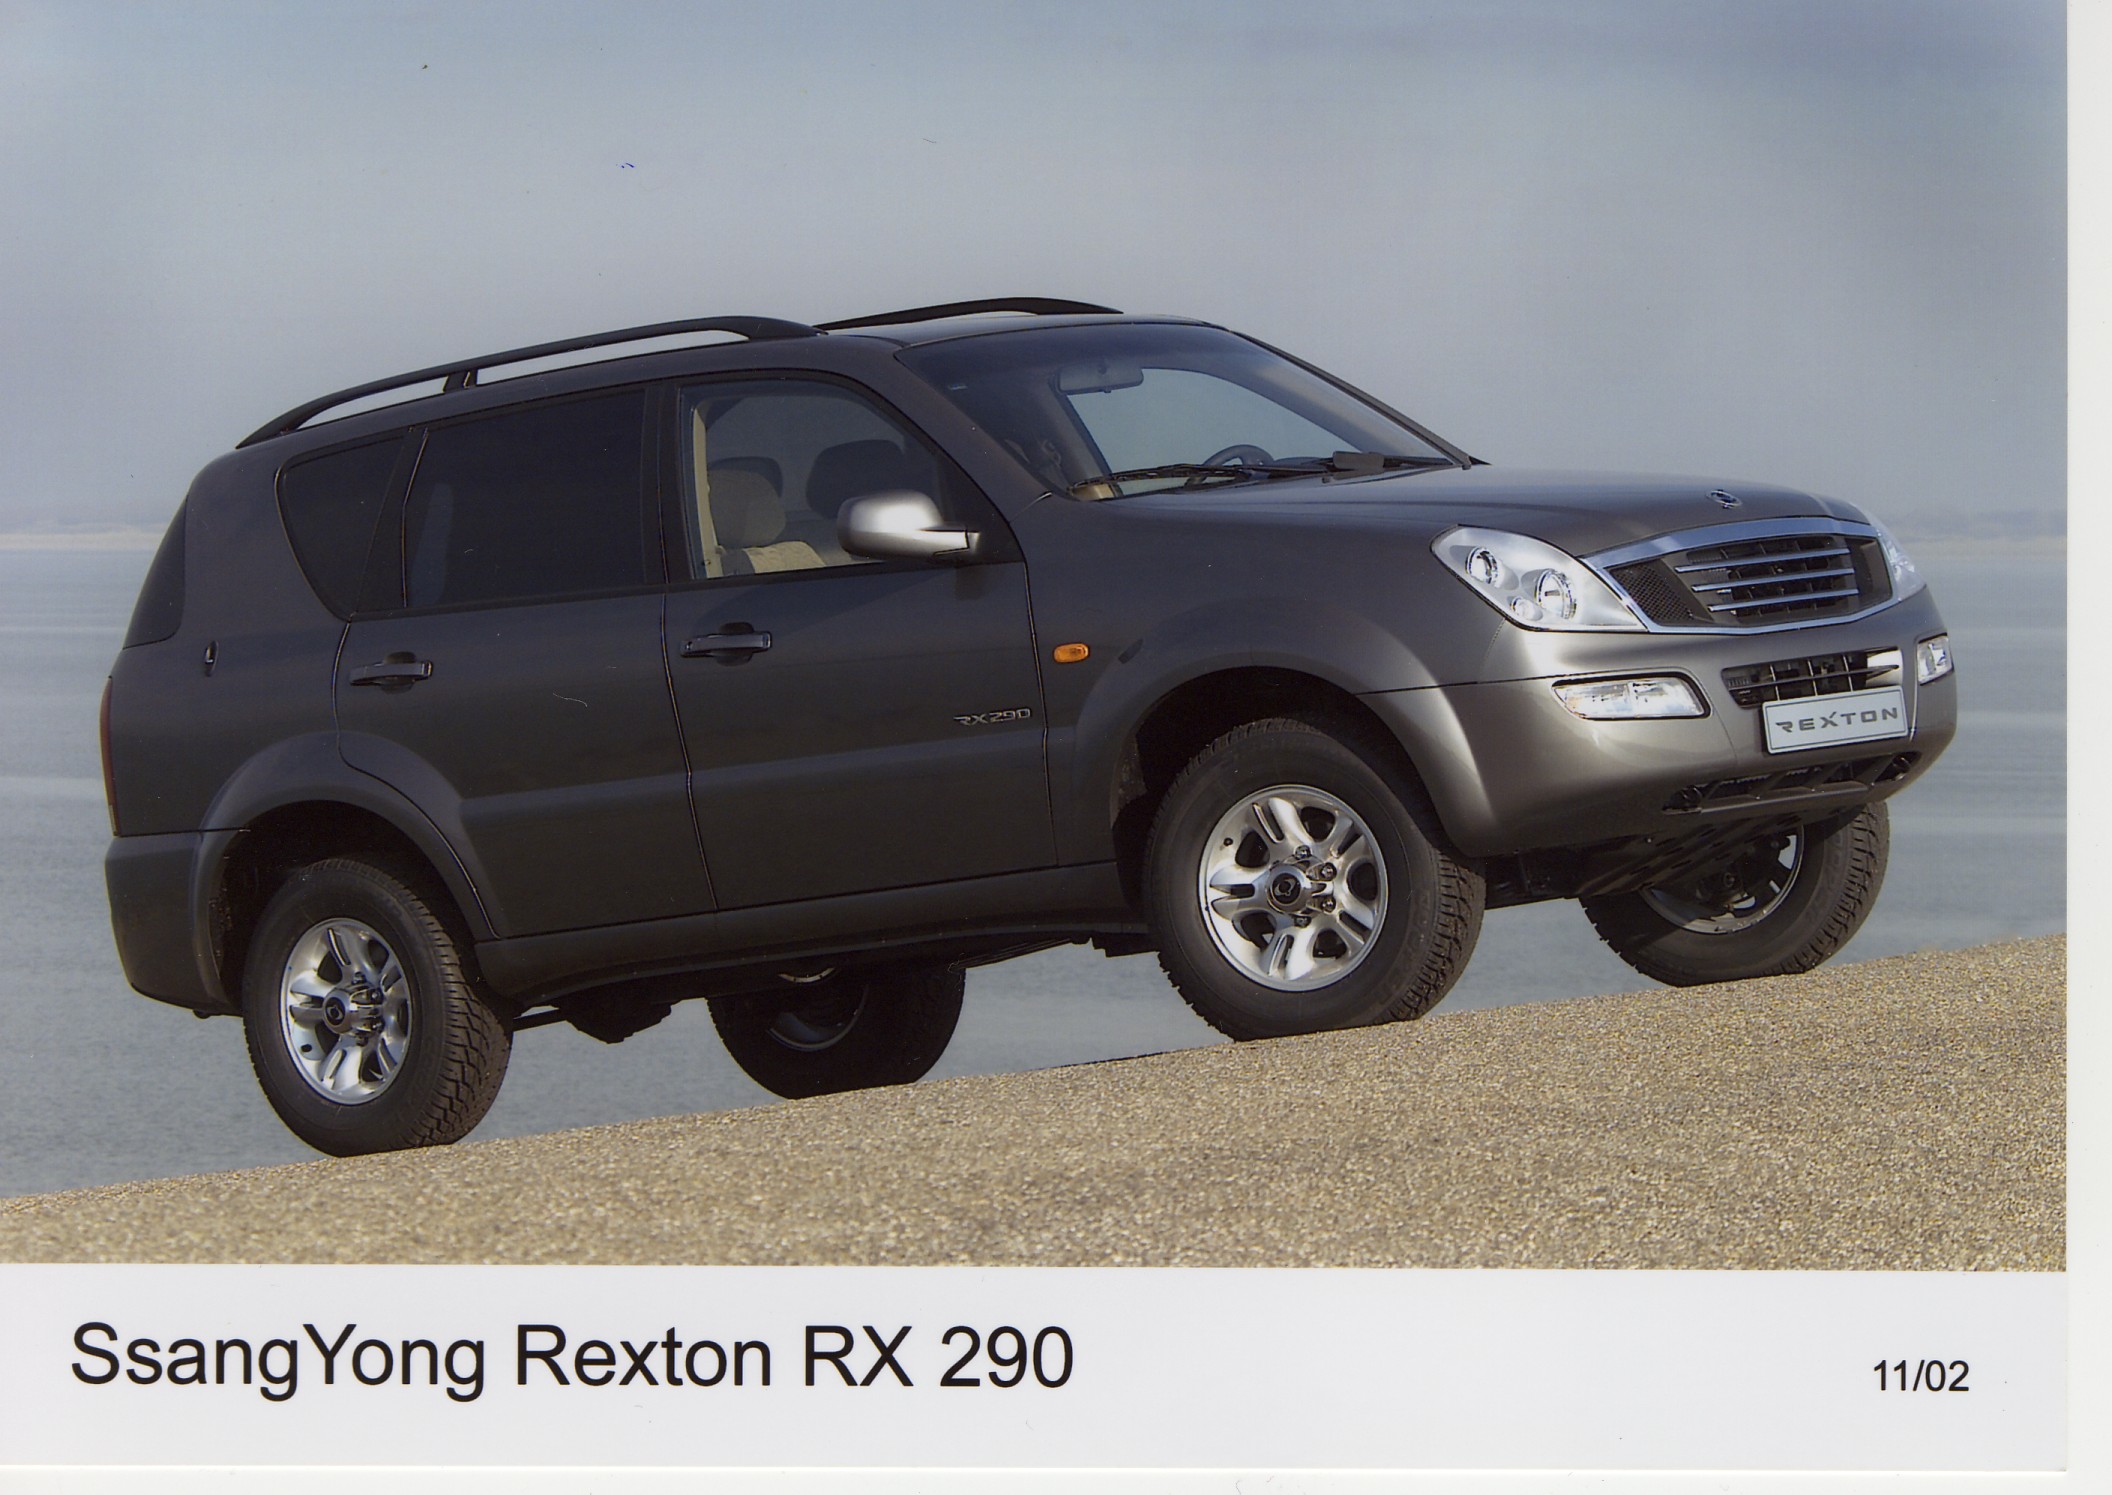 SsangYong Rexton RX 290